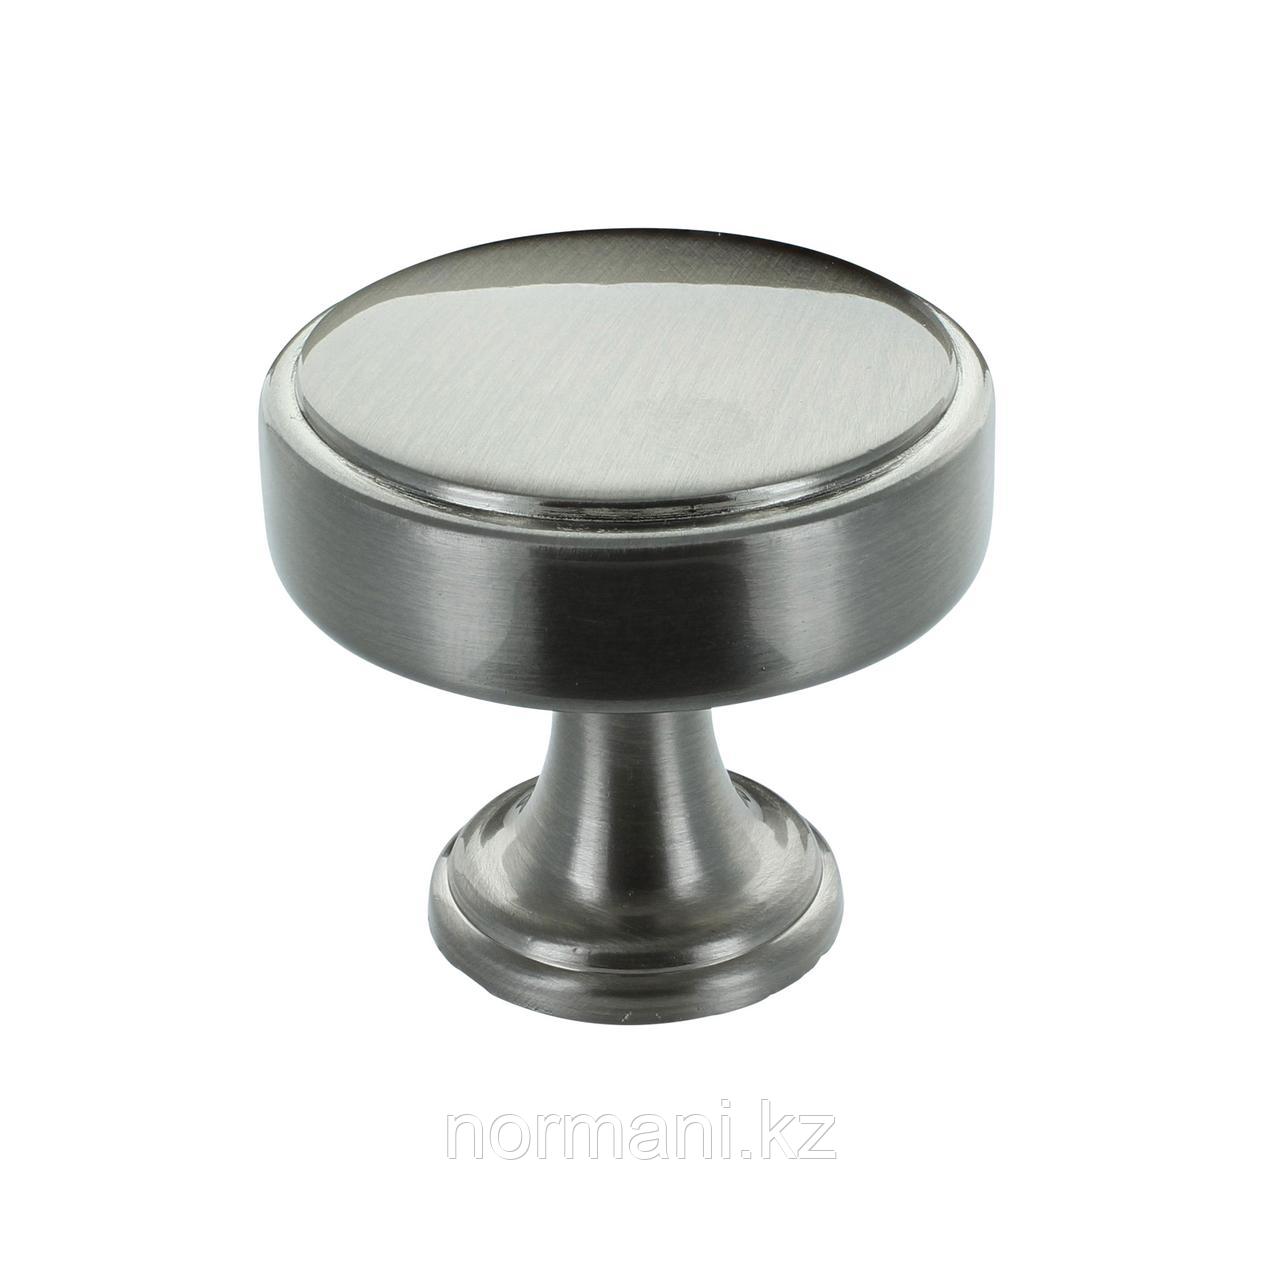 Ручка кнопка диаметр 40мм, отделка сталь шлифованная, фото 1